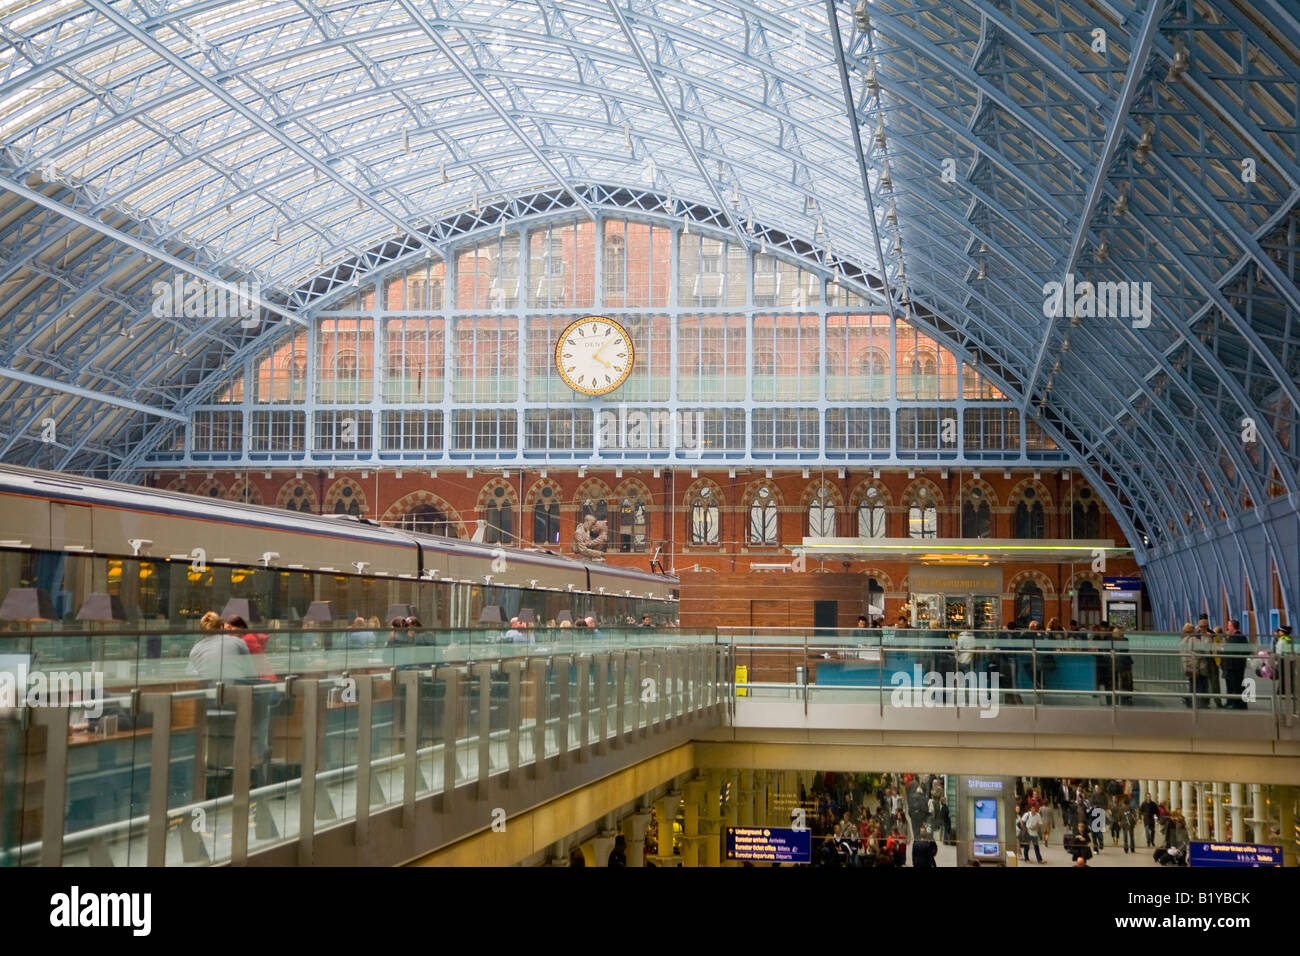 Interieur zeigt das Dach und die Uhr in der umgebauten St Pancras Railway Station London England Stockfoto